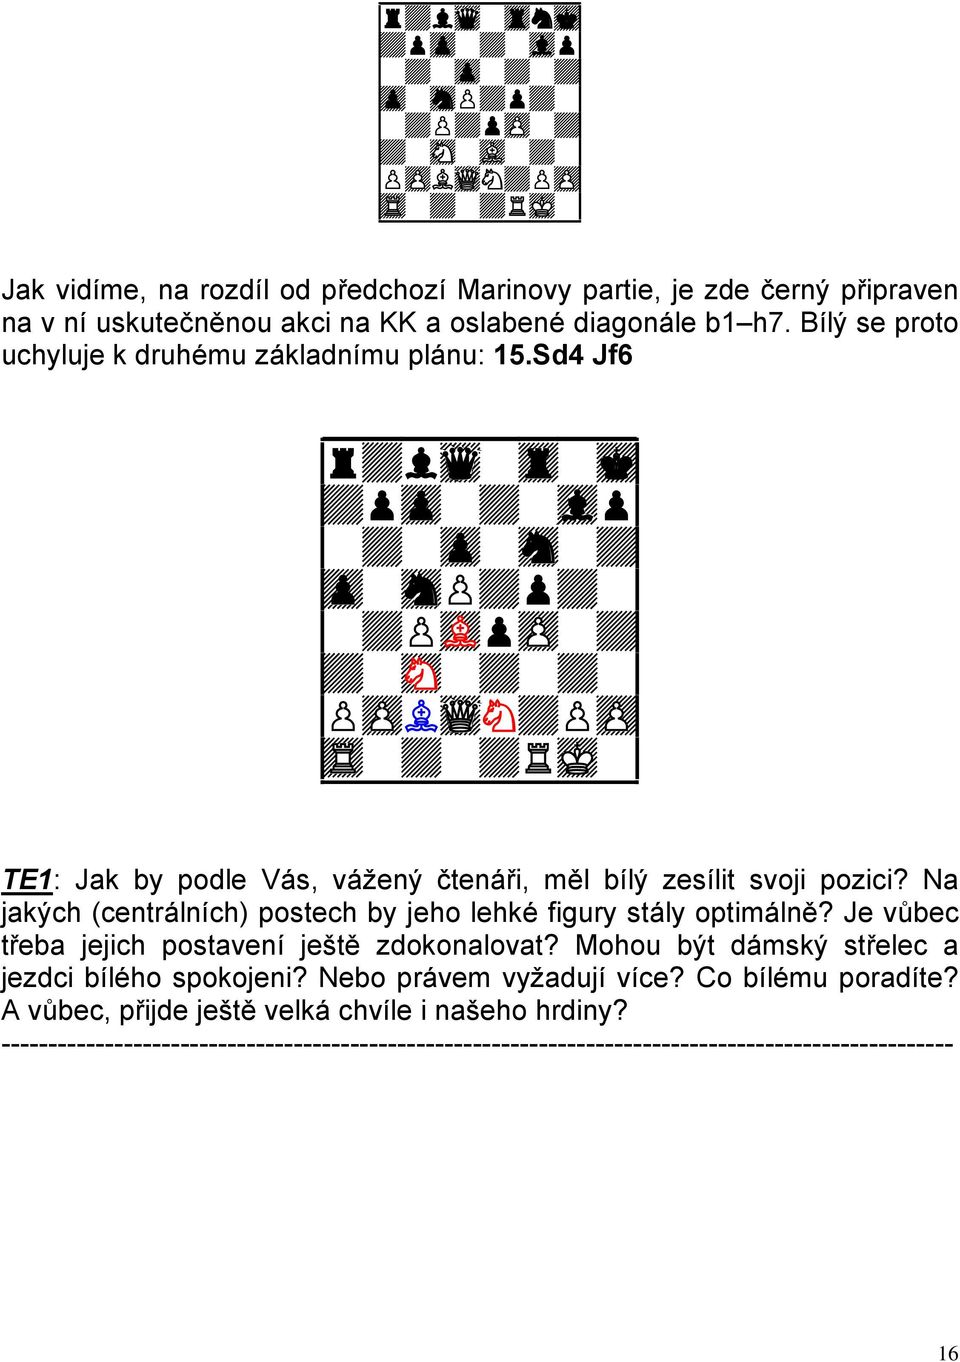 Sd4 Jf6 9r+lwq-tr-mk0 9+pzp-+-vlp0 9-+-zp-sn-+0 9zp-snP+p+-0 9-+PvLpzP-+0 9+-sN-+-+-0 9PzPLwQN+PzP0 TE1: Jak by podle Vás, vážený čtenáři, měl bílý zesílit svoji pozici?